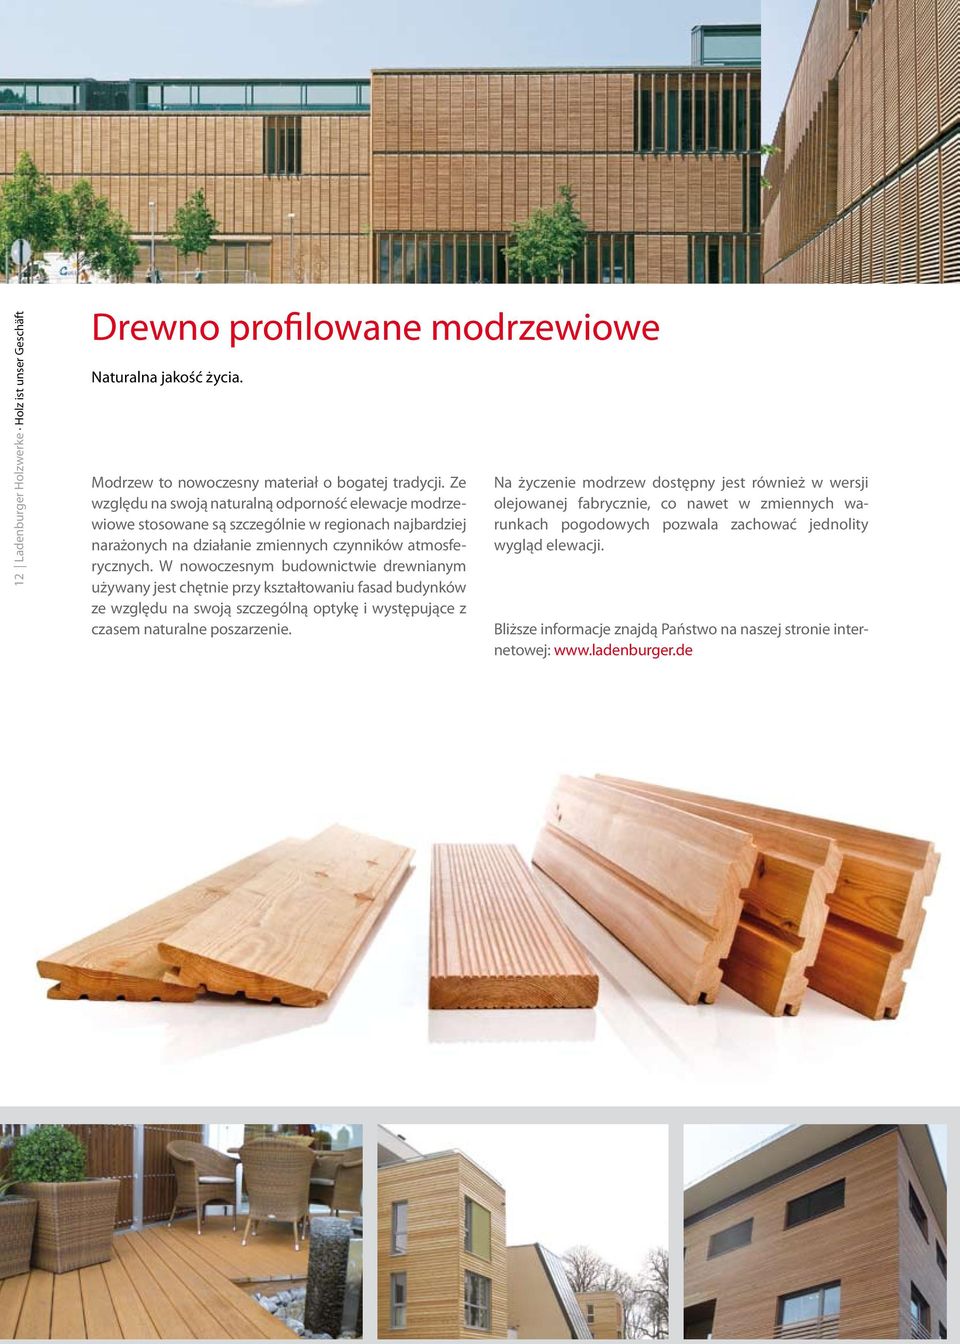 W nowoczesnym budownictwie drewnianym używany jest chętnie przy kształtowaniu fasad budynków ze względu na swoją szczególną optykę i występujące z czasem naturalne poszarzenie.